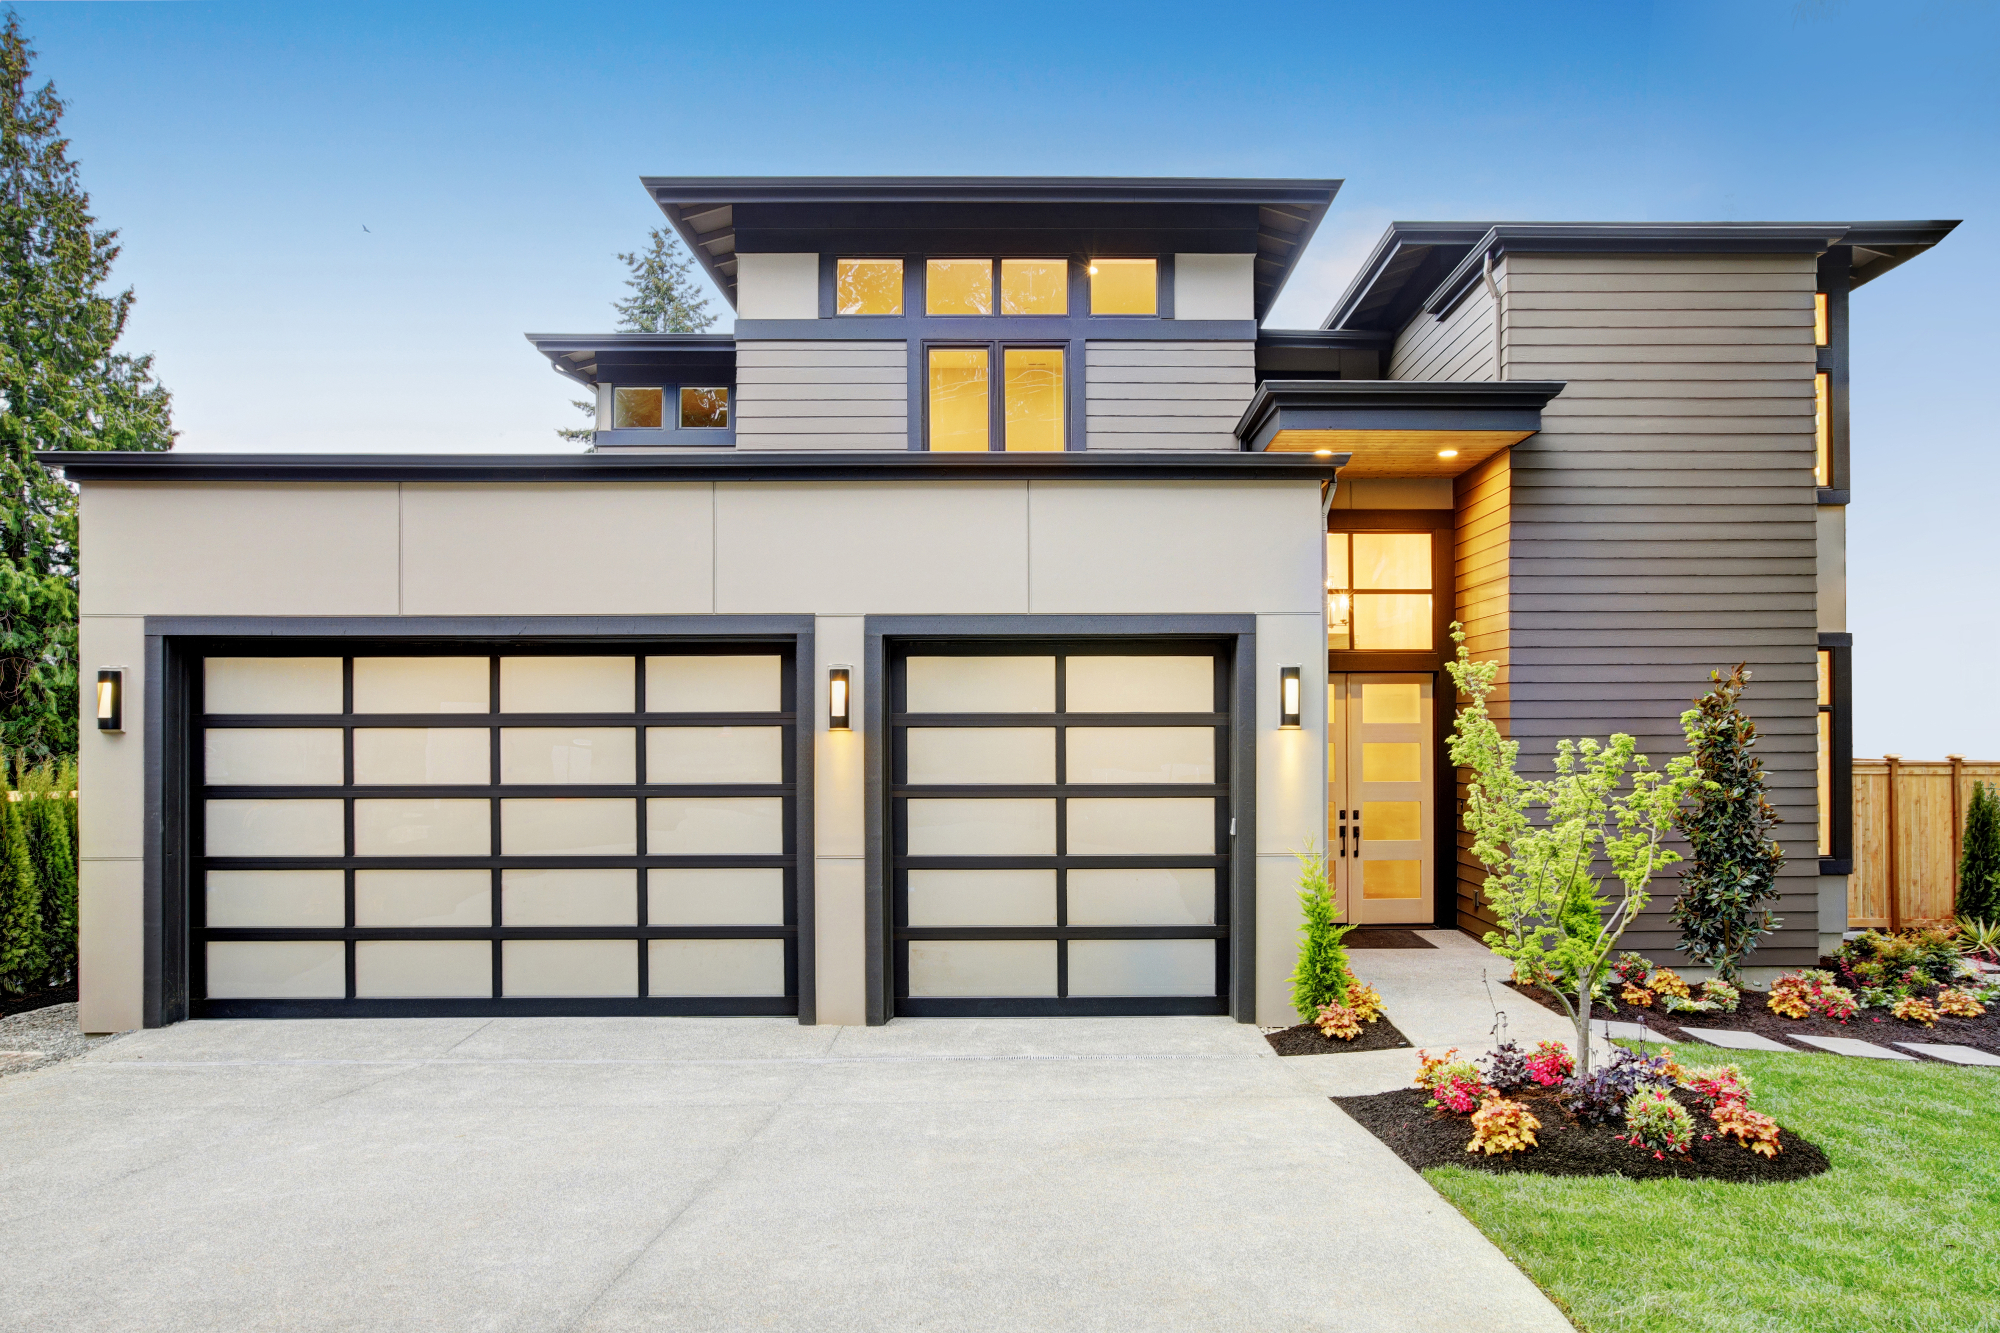 Garažna vrata so pomembna za varnost naše hiše